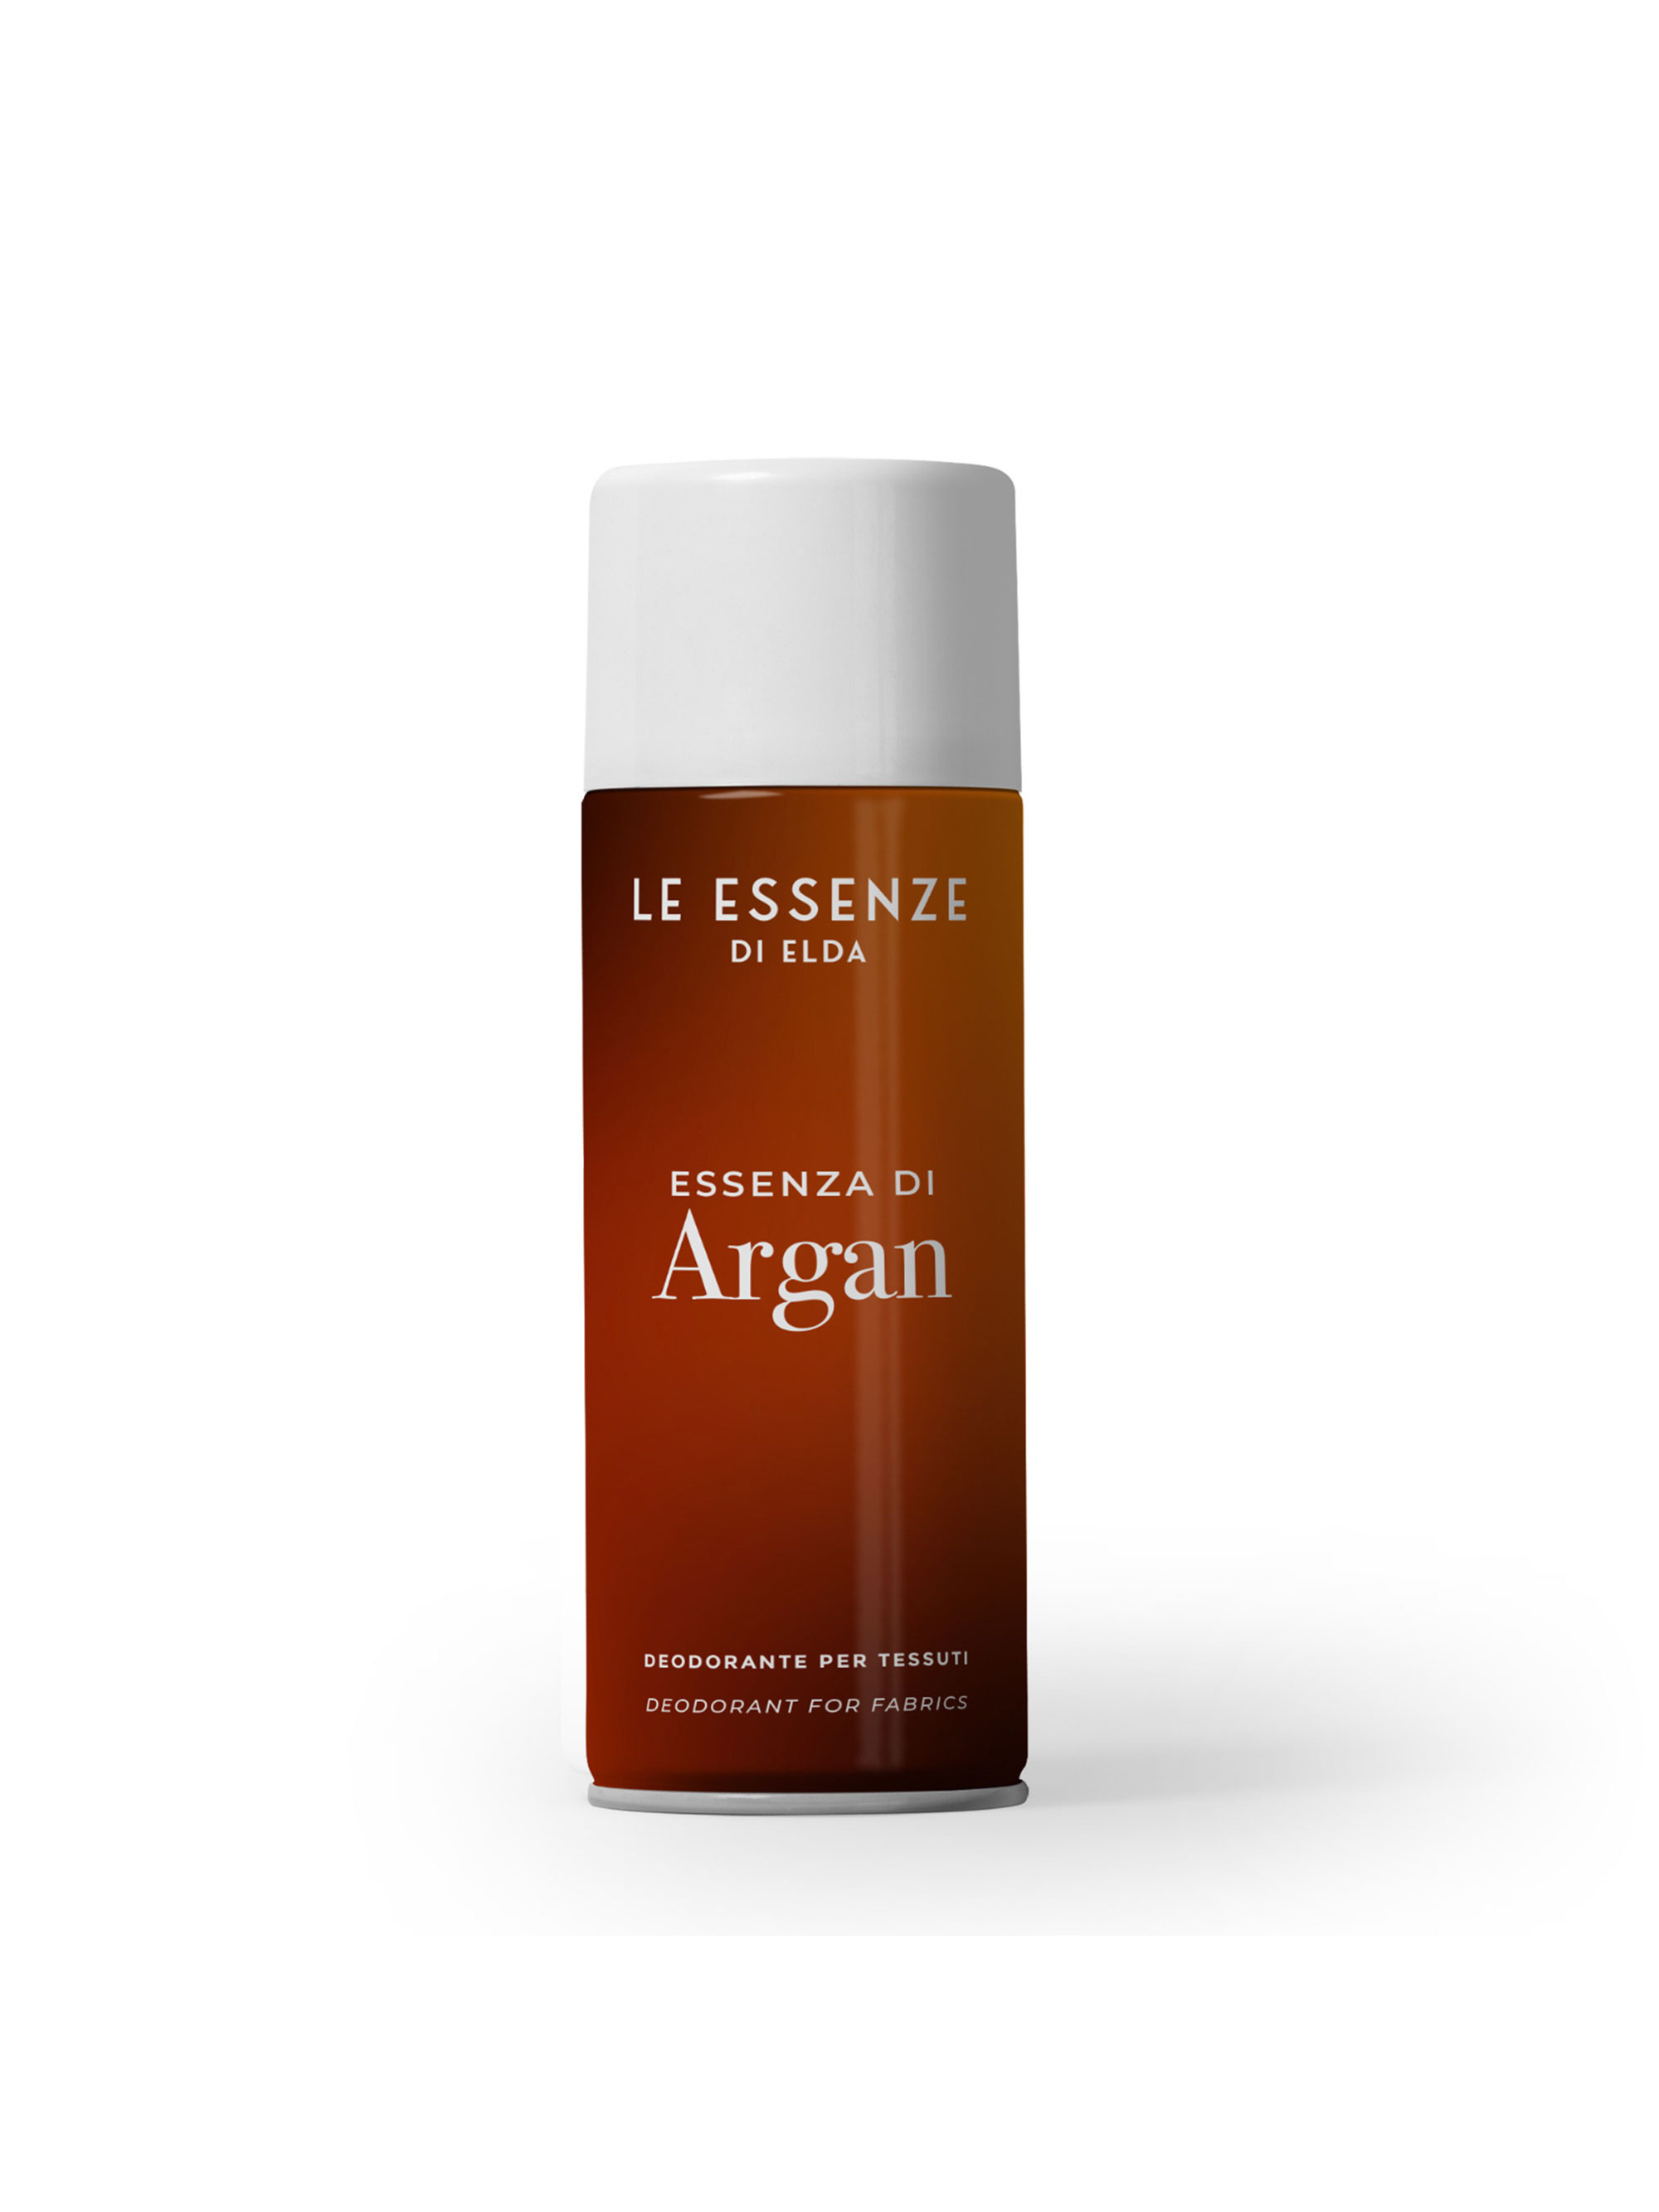 Spray Argan - aerosoles de tela